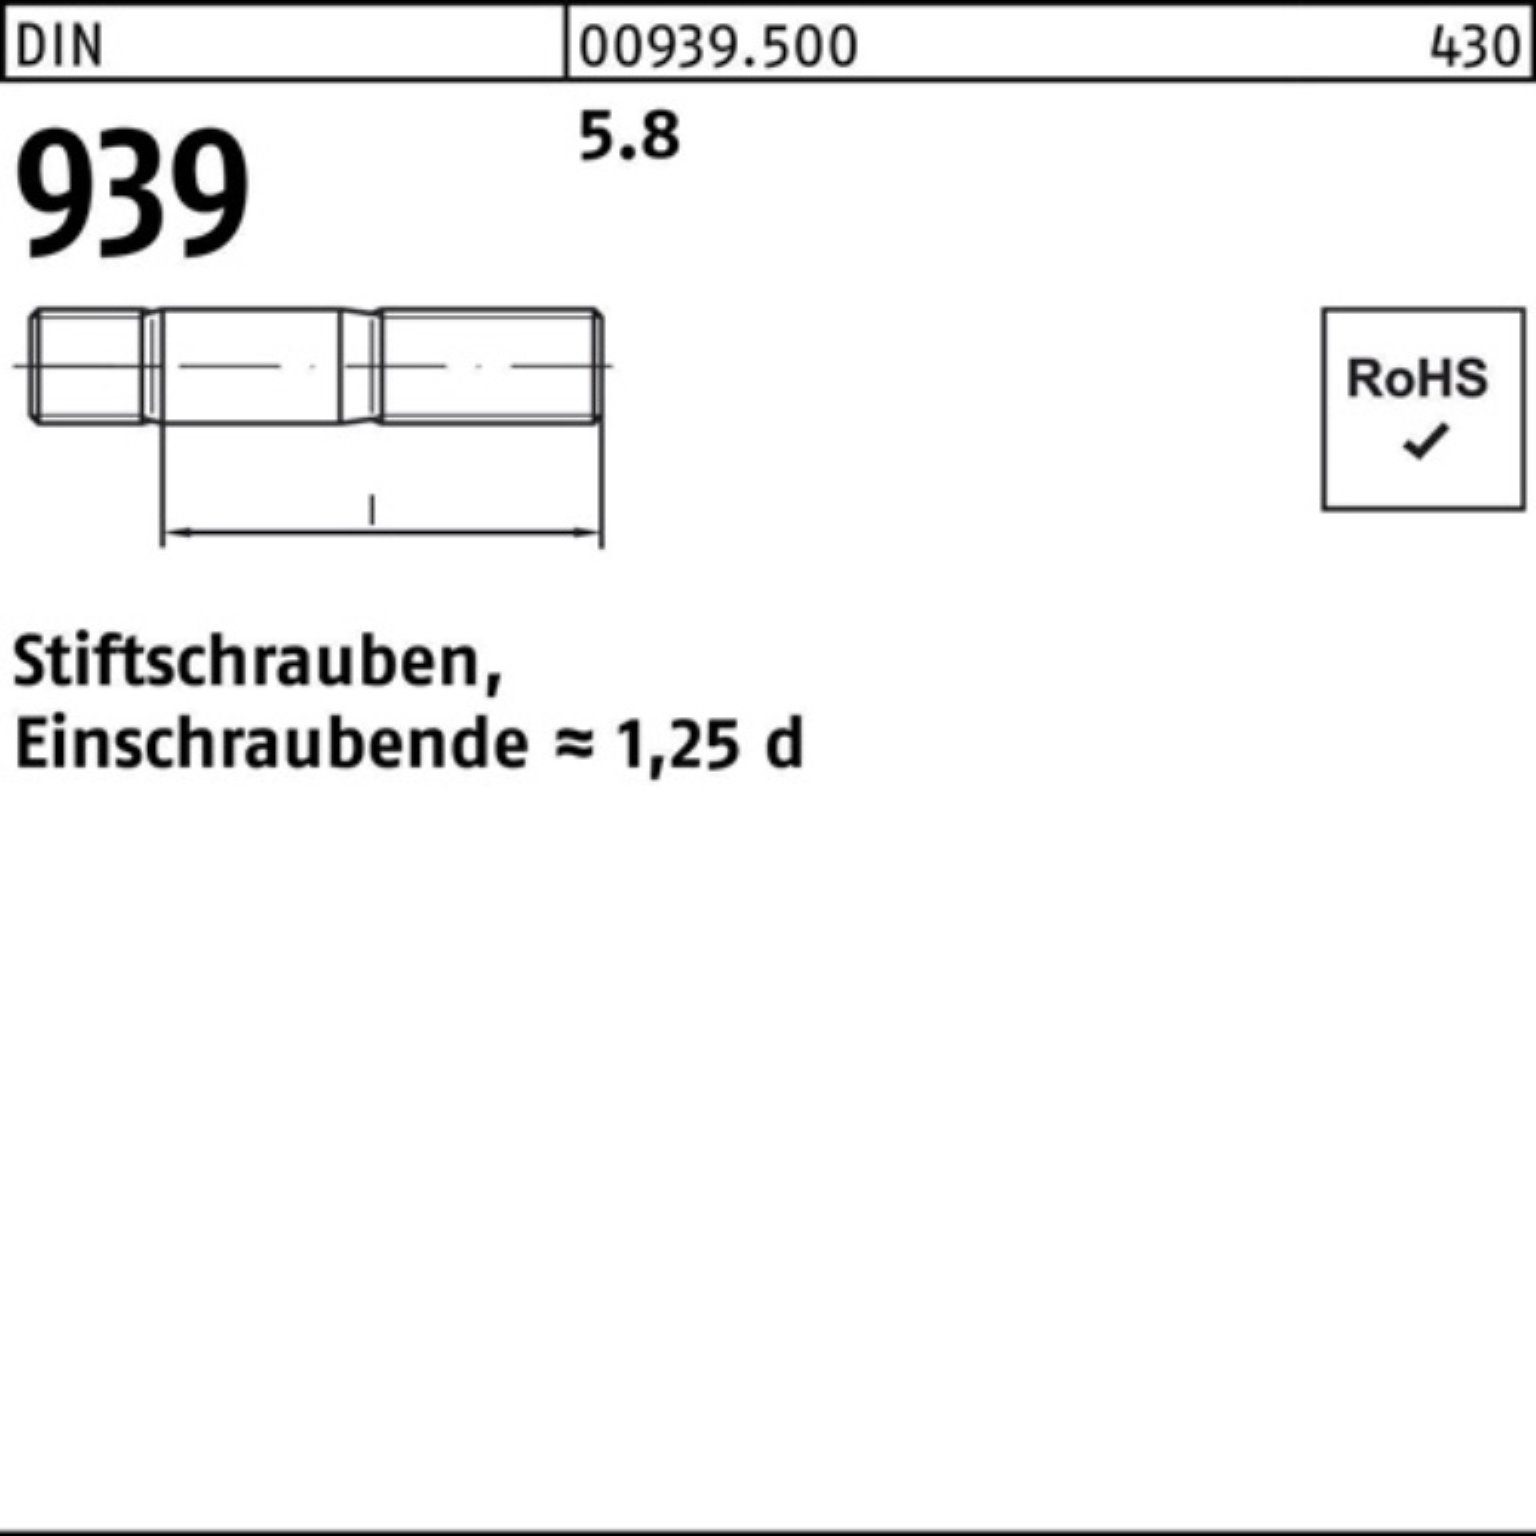 Reyher Stiftschraube 100er Pack Stiftschraube 50 DIN M10x 5.8 Einschraubende=1,25d 939 190